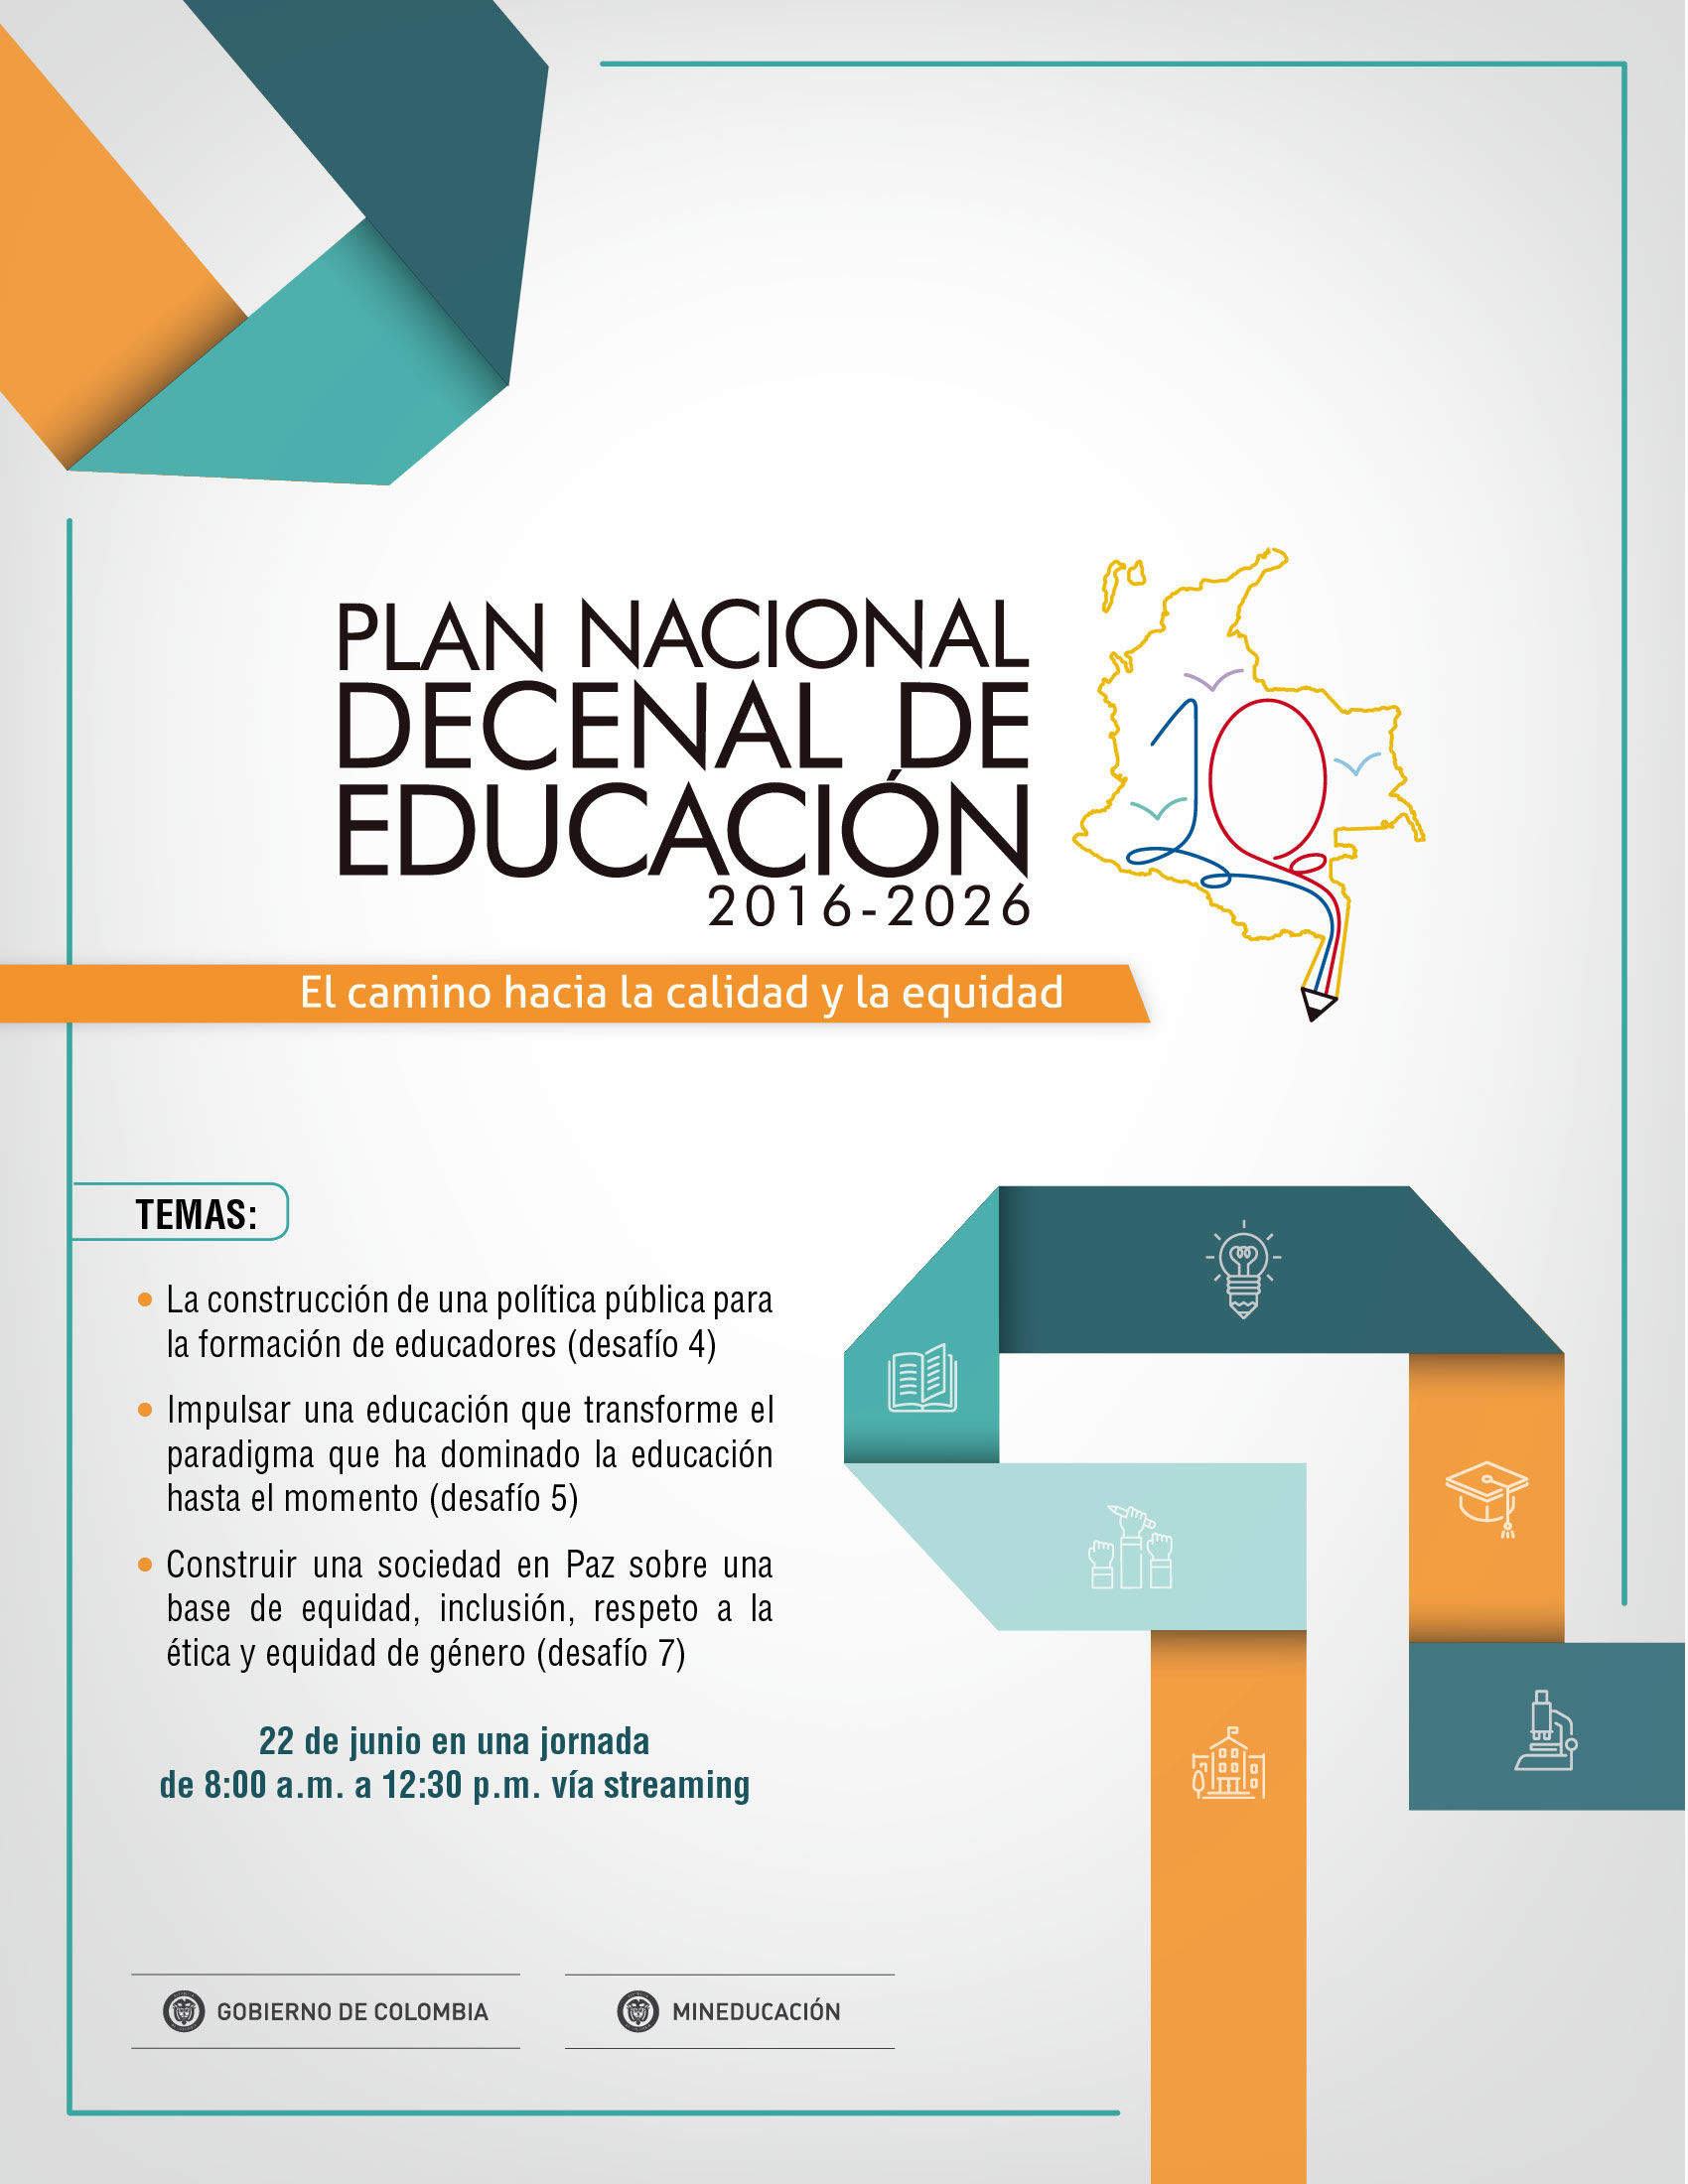 Foro Nacional para la difusión del Plan Decenal de Educación PNDE 2016-2026